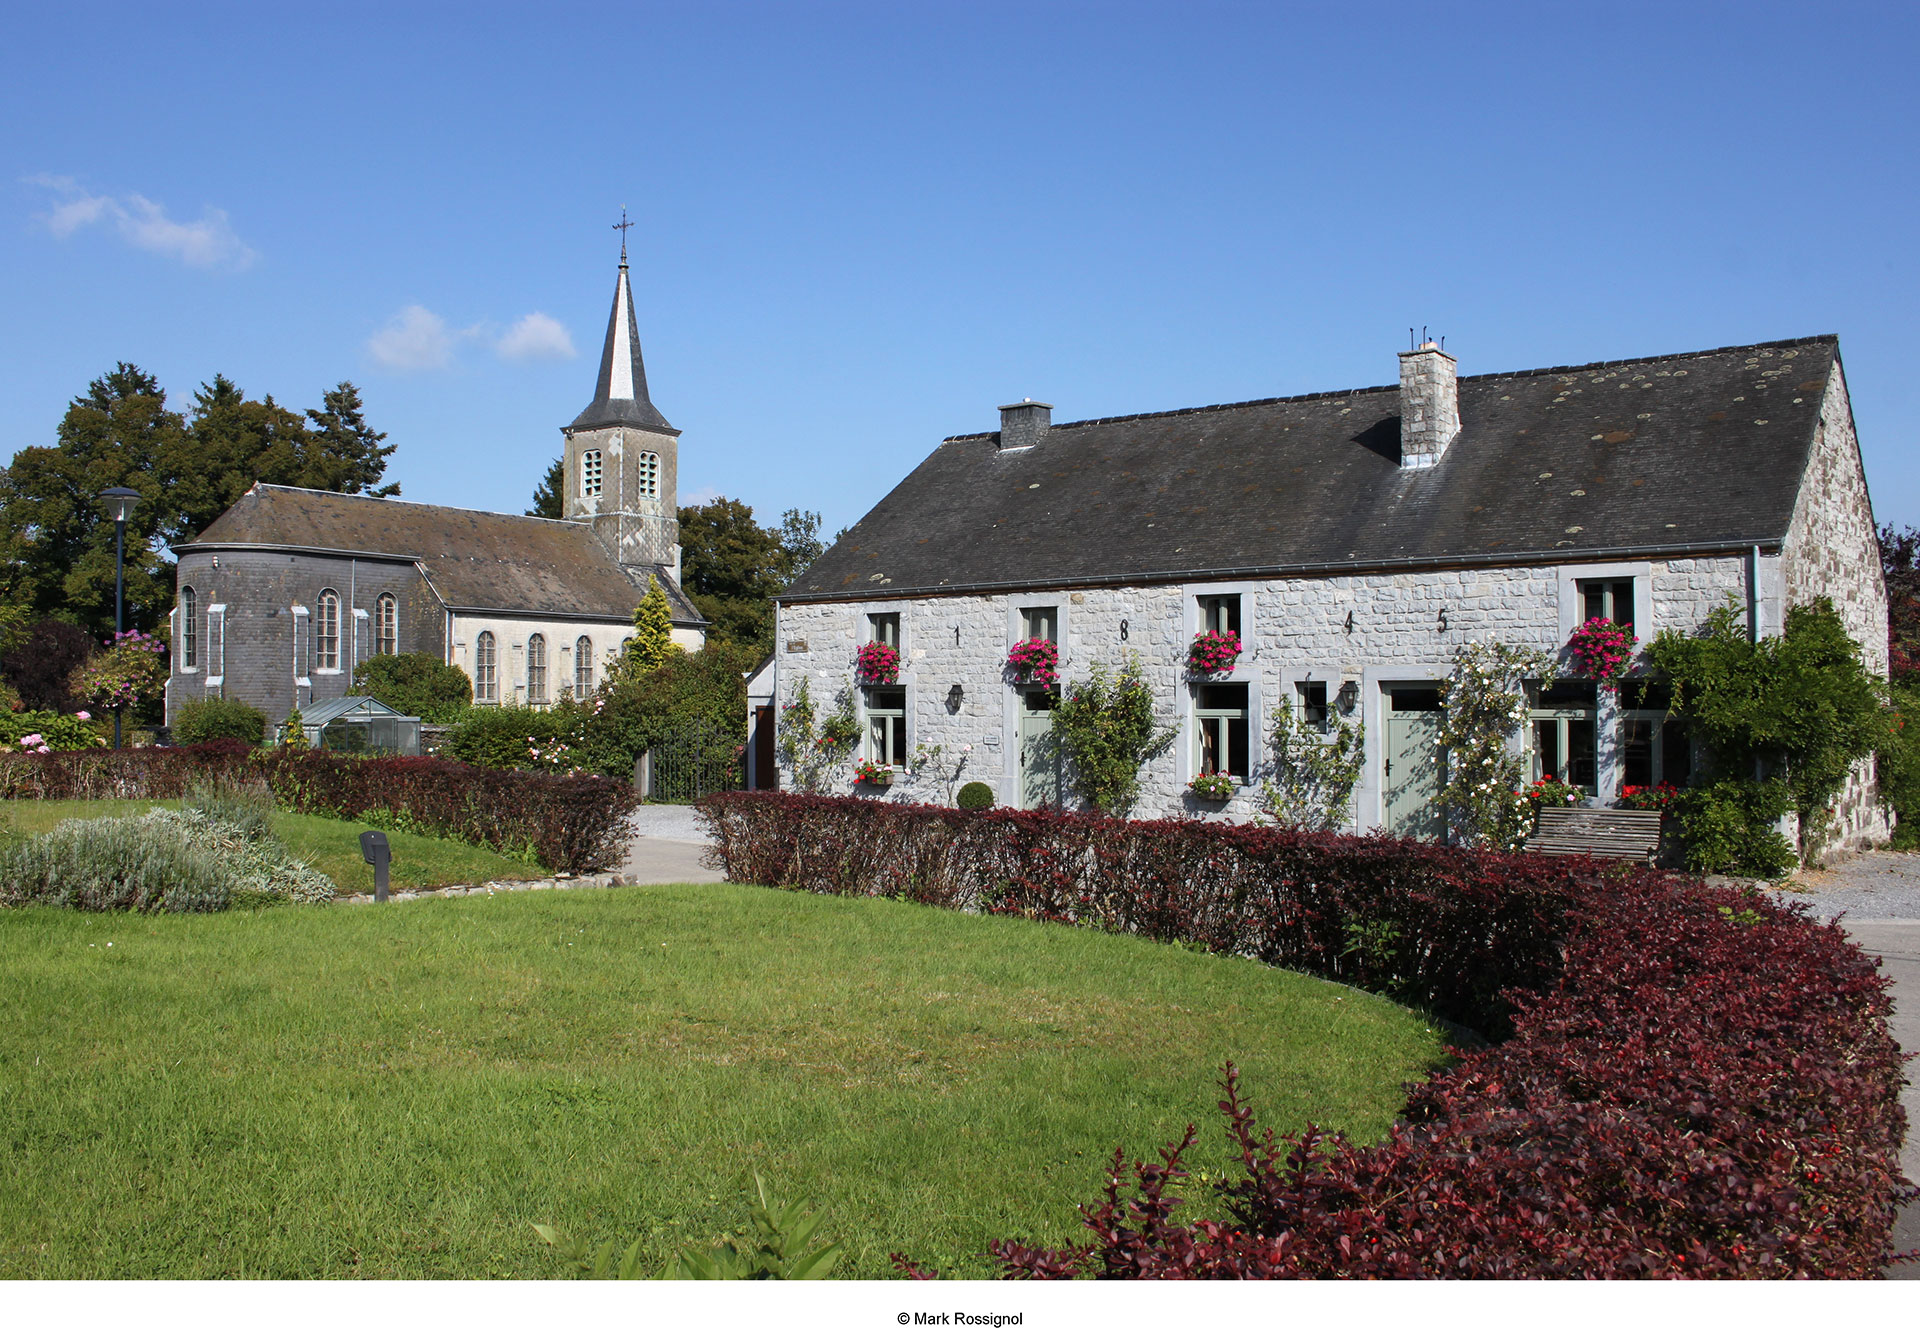 Les plus beaux villages de Wallonie - Sohier - clocher - cour intérieur - ciel bleu - jardin